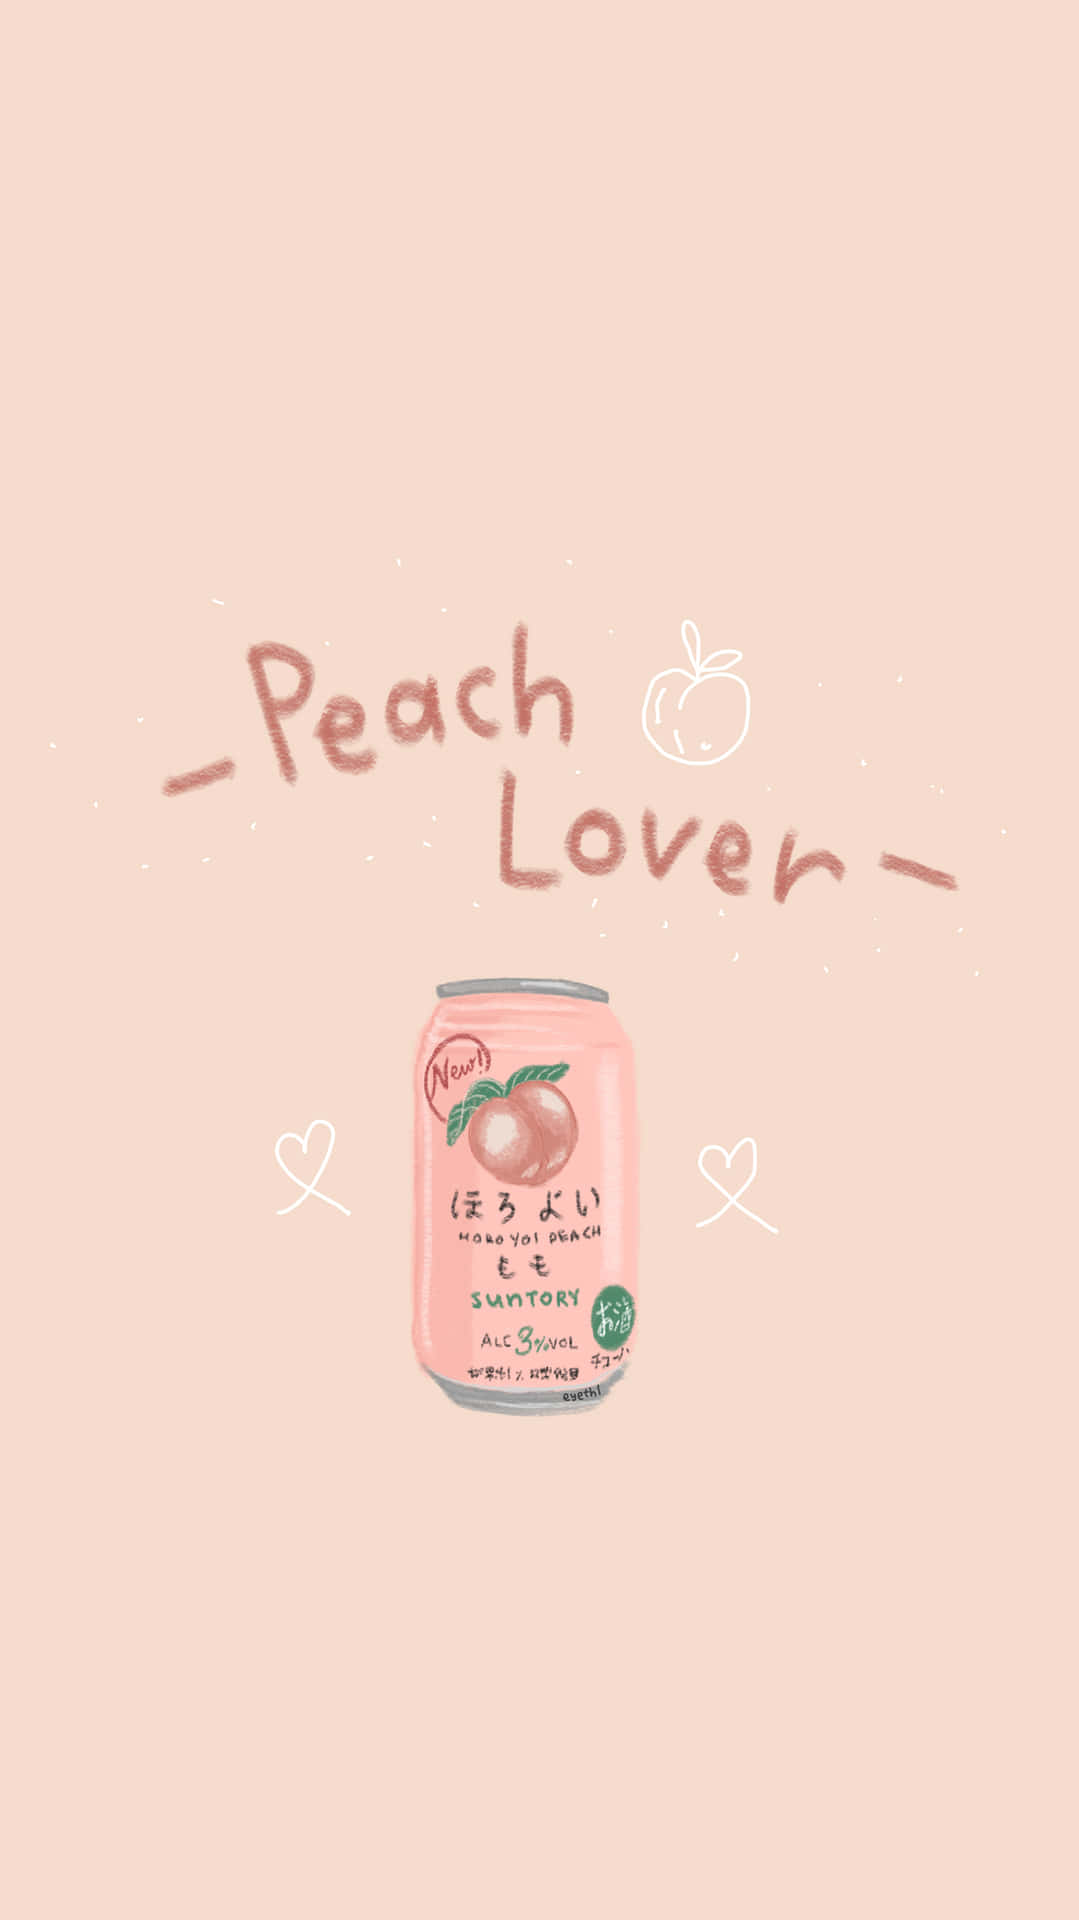 Peachlover - En Rosa Flaska Med Orden Peach Lover (som En Design För Dator- Eller Mobilskärmsvägg) Wallpaper